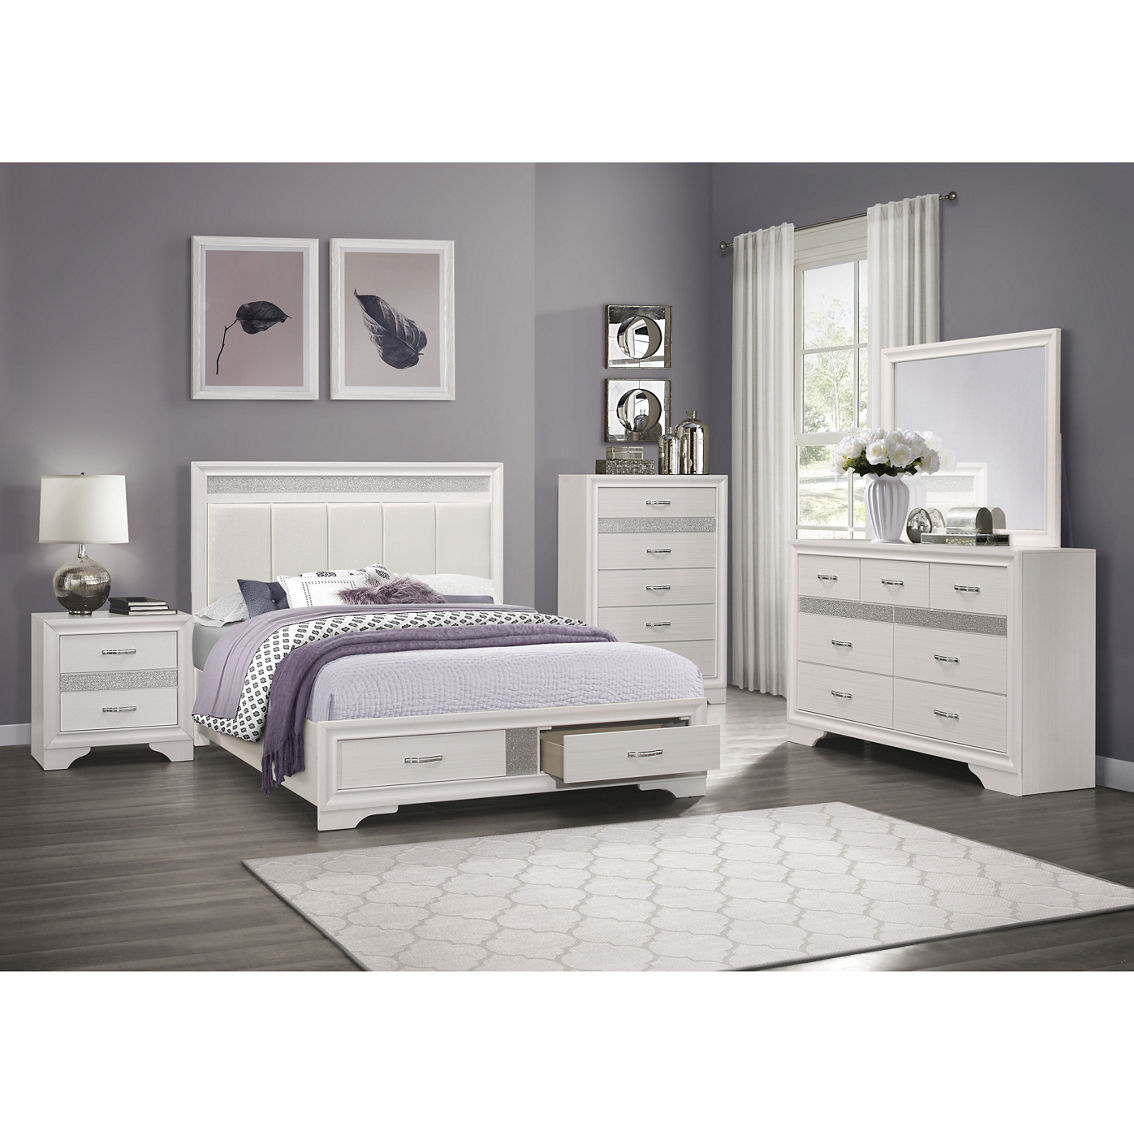 Homelegance Luster Ii Bedroom 5 Pc. Set | Bedroom Sets | Furniture ...